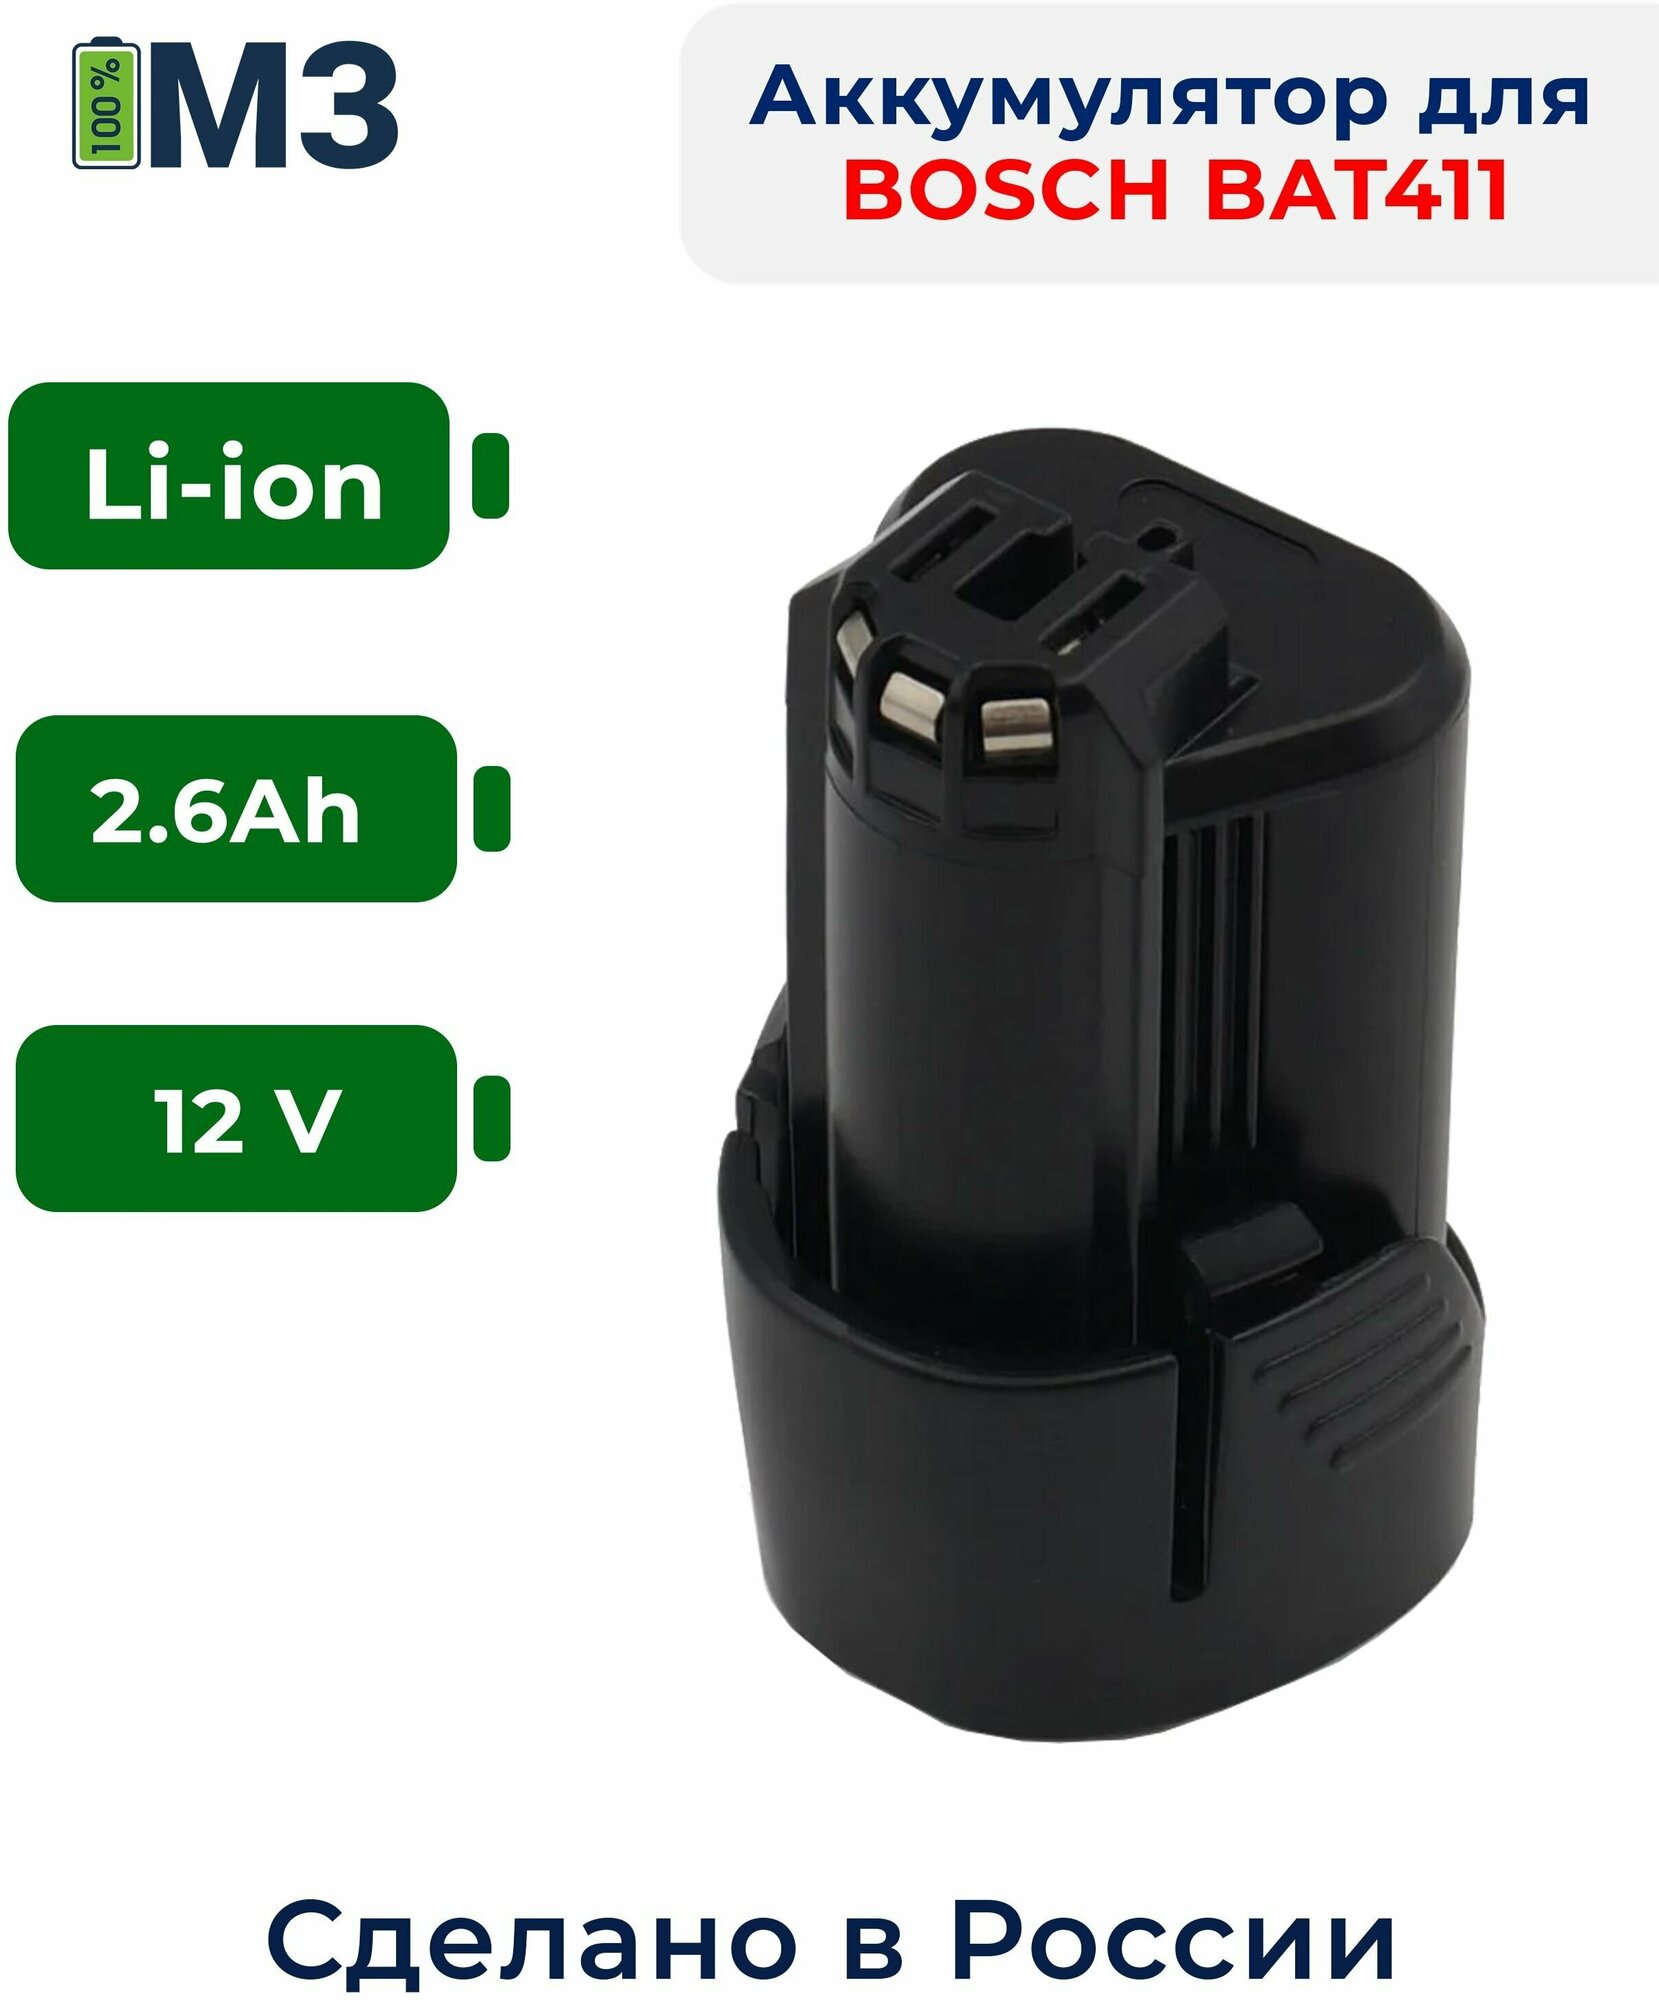 Аккумулятор для BOSCH (BAT411) 12V 2.6Ah Li-Ion